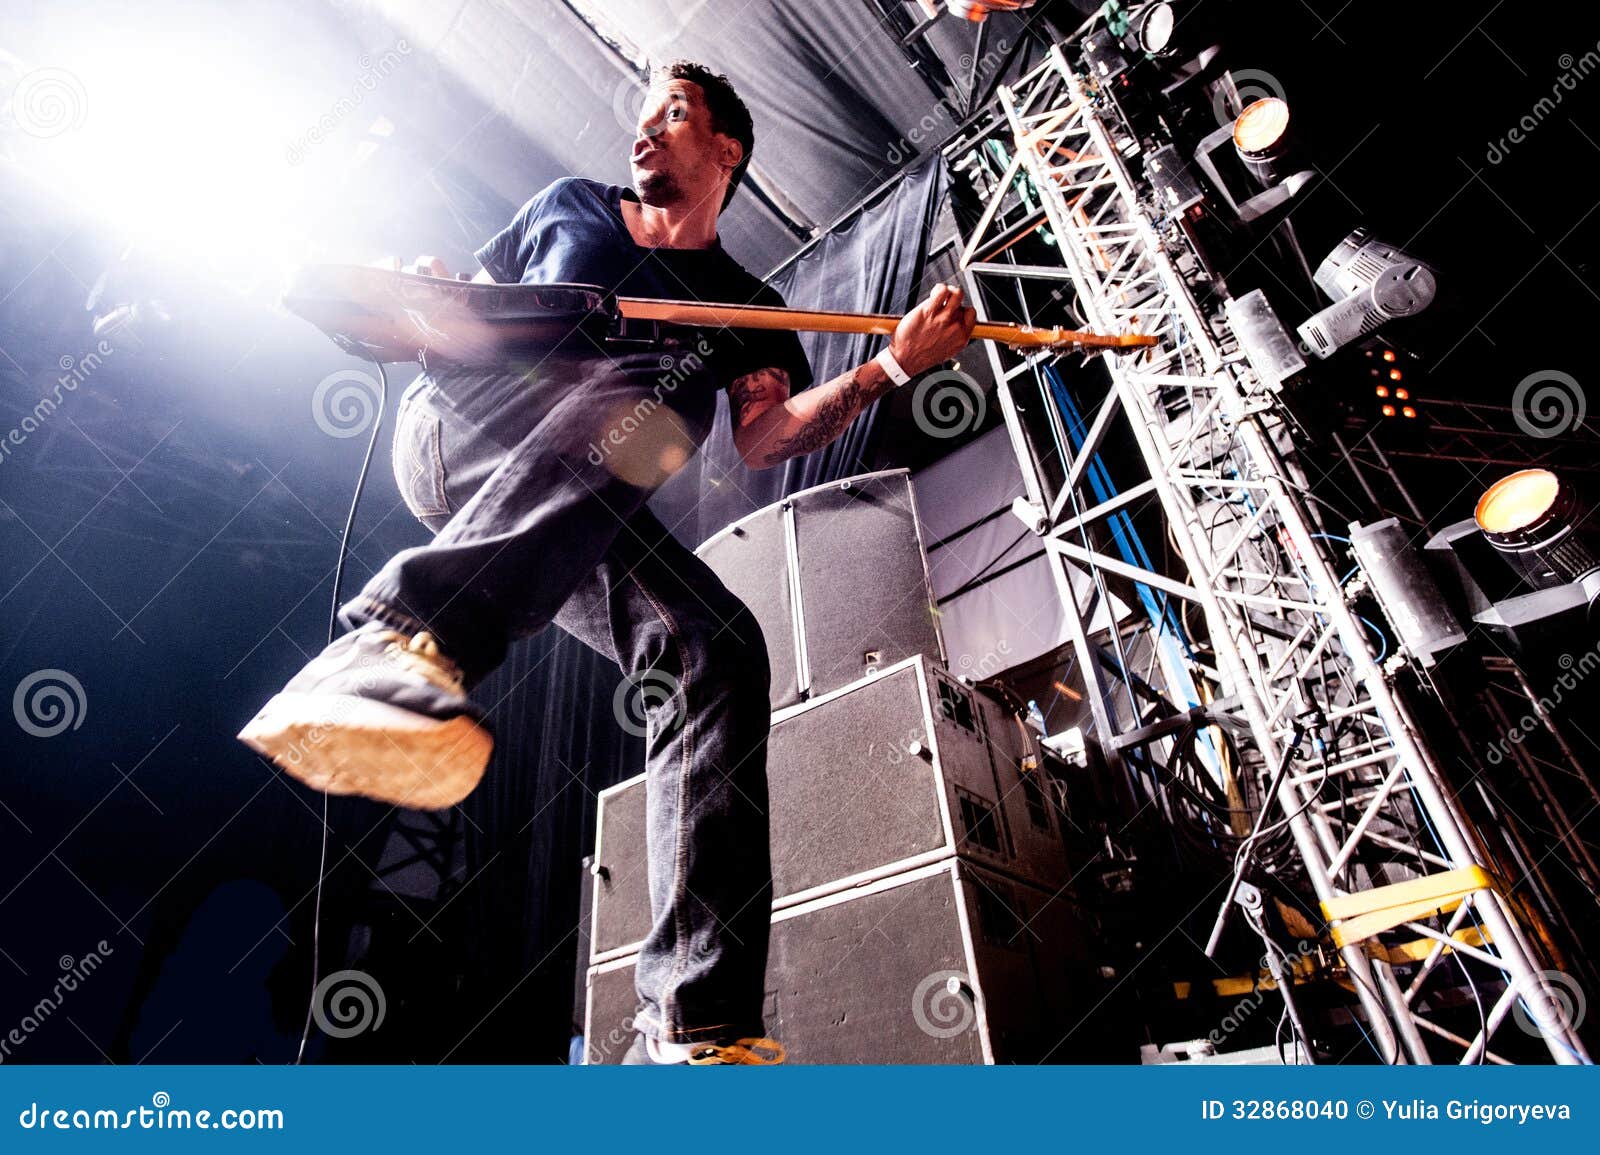 Deftones concert. American alternative band Deftones performing live at Arena club, Moscow, Russia.